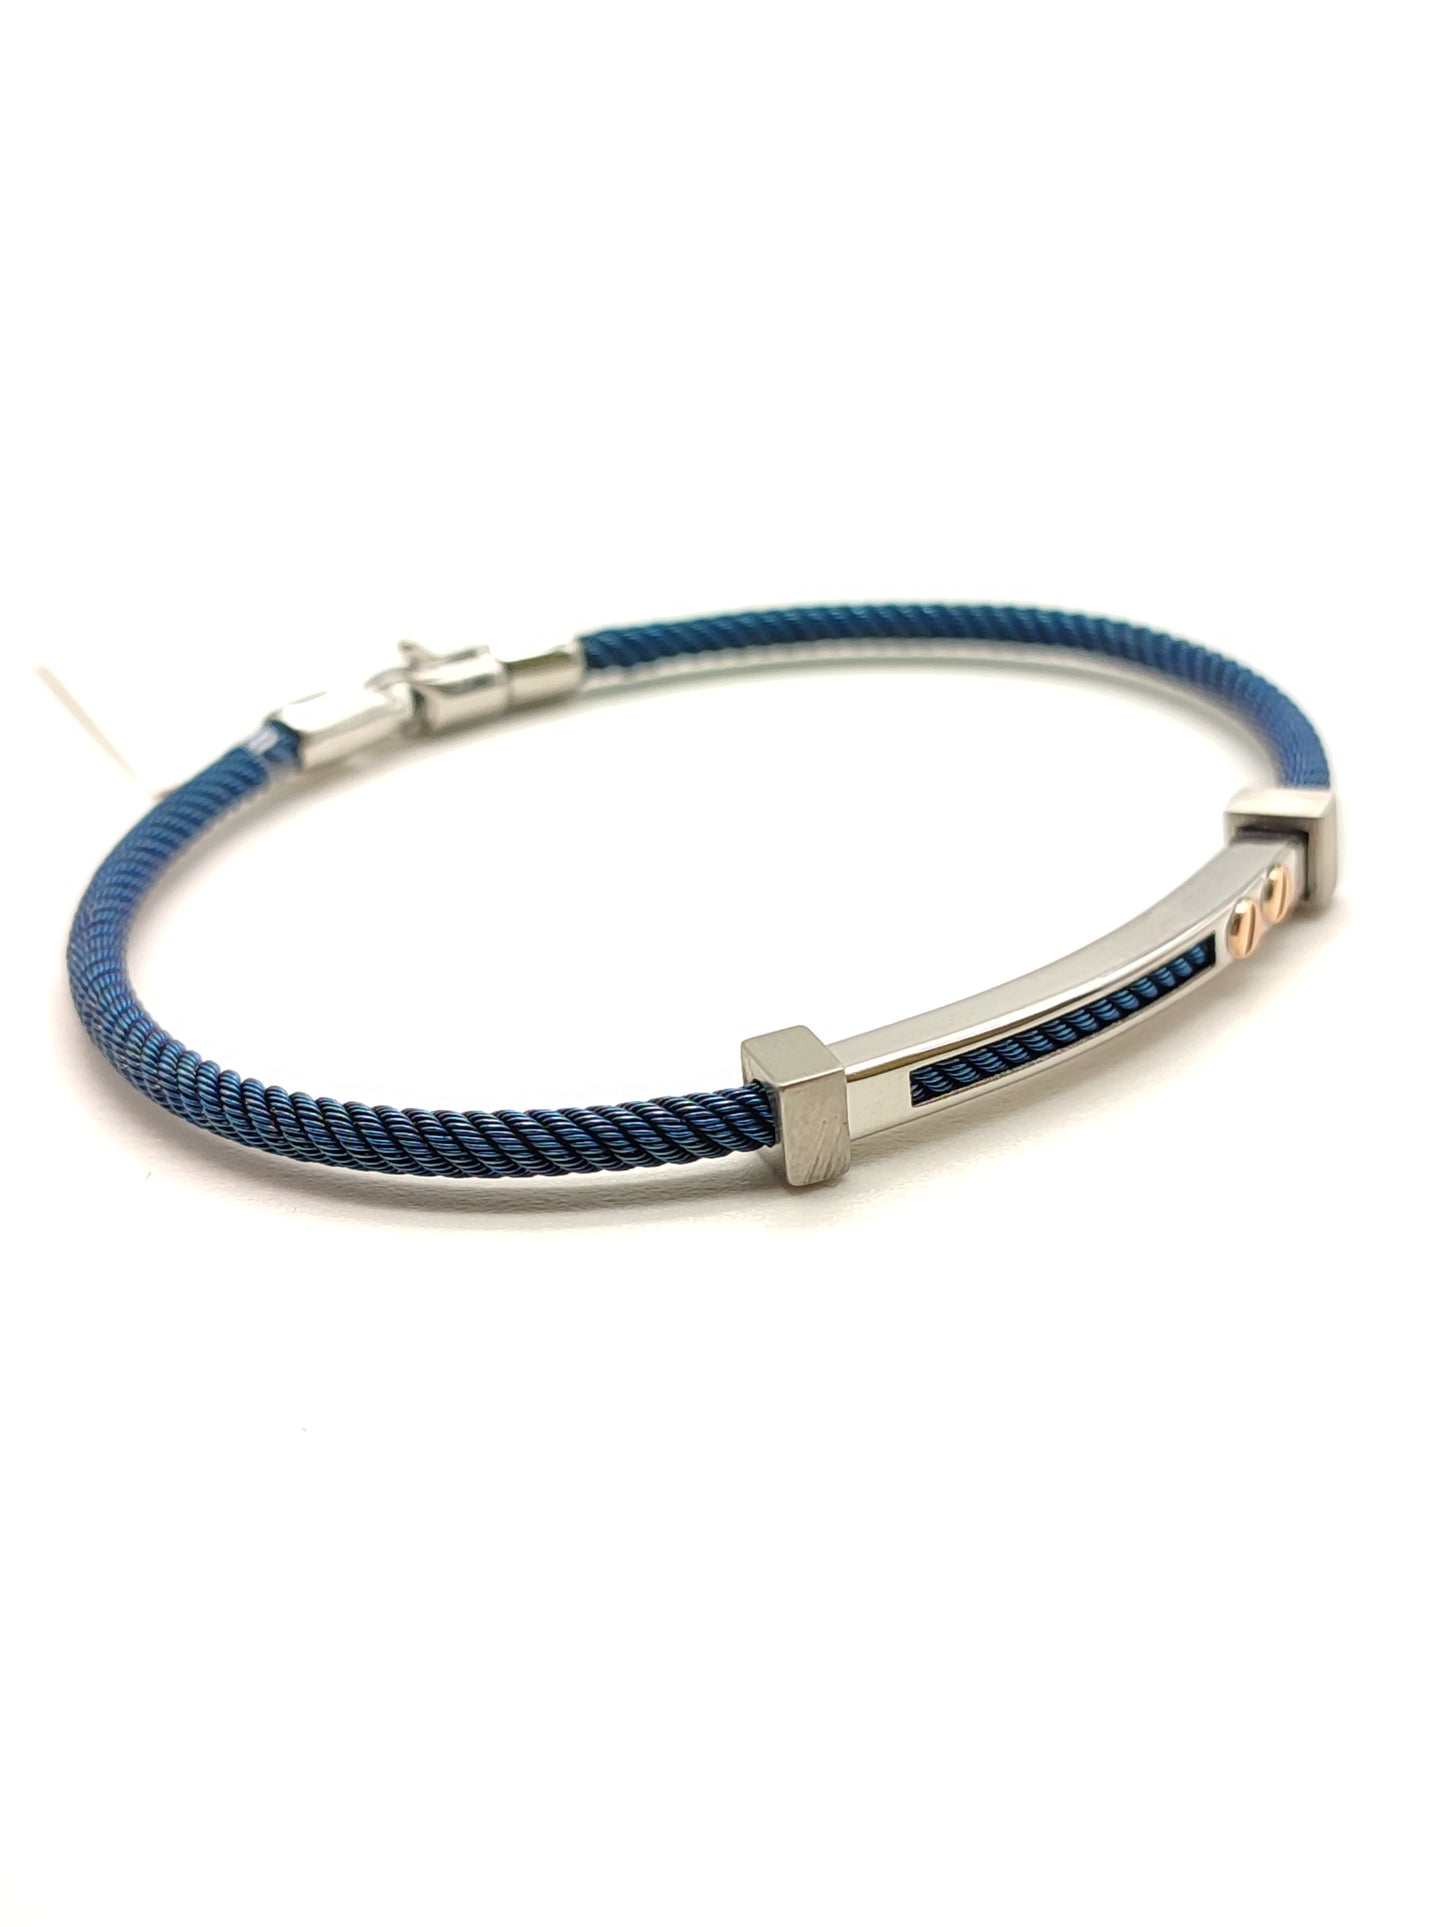 Steel and blue gold bracelet